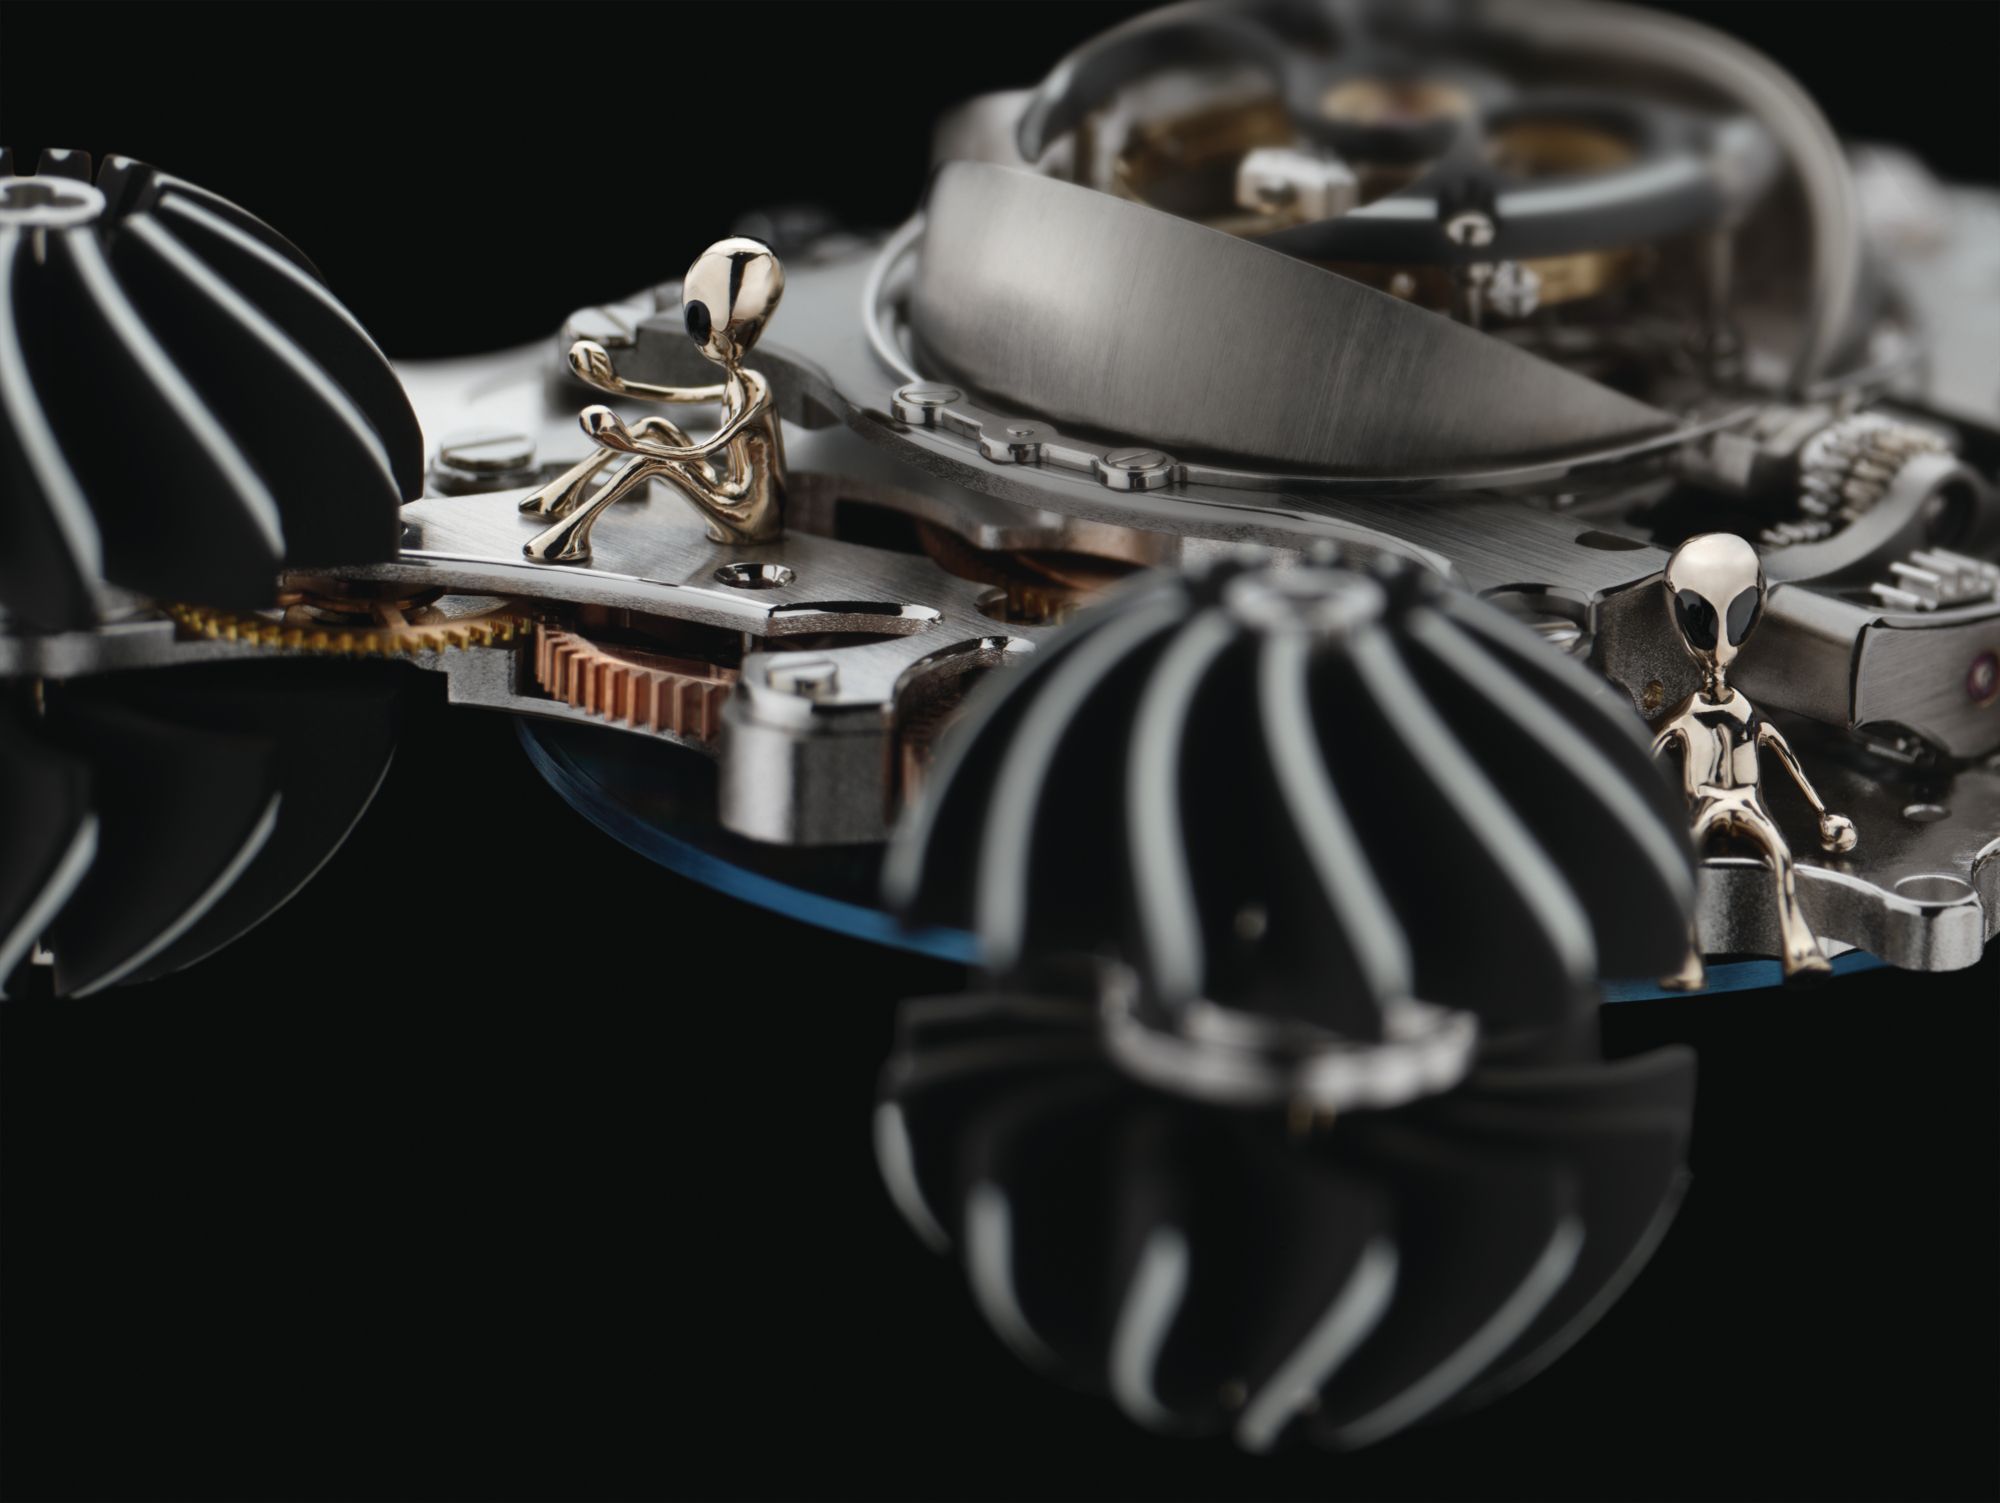 Công nghệ phát triển có làm mất đi vẻ đẹp của nghề chế tác đồng hồ thủ công truyền thống? 